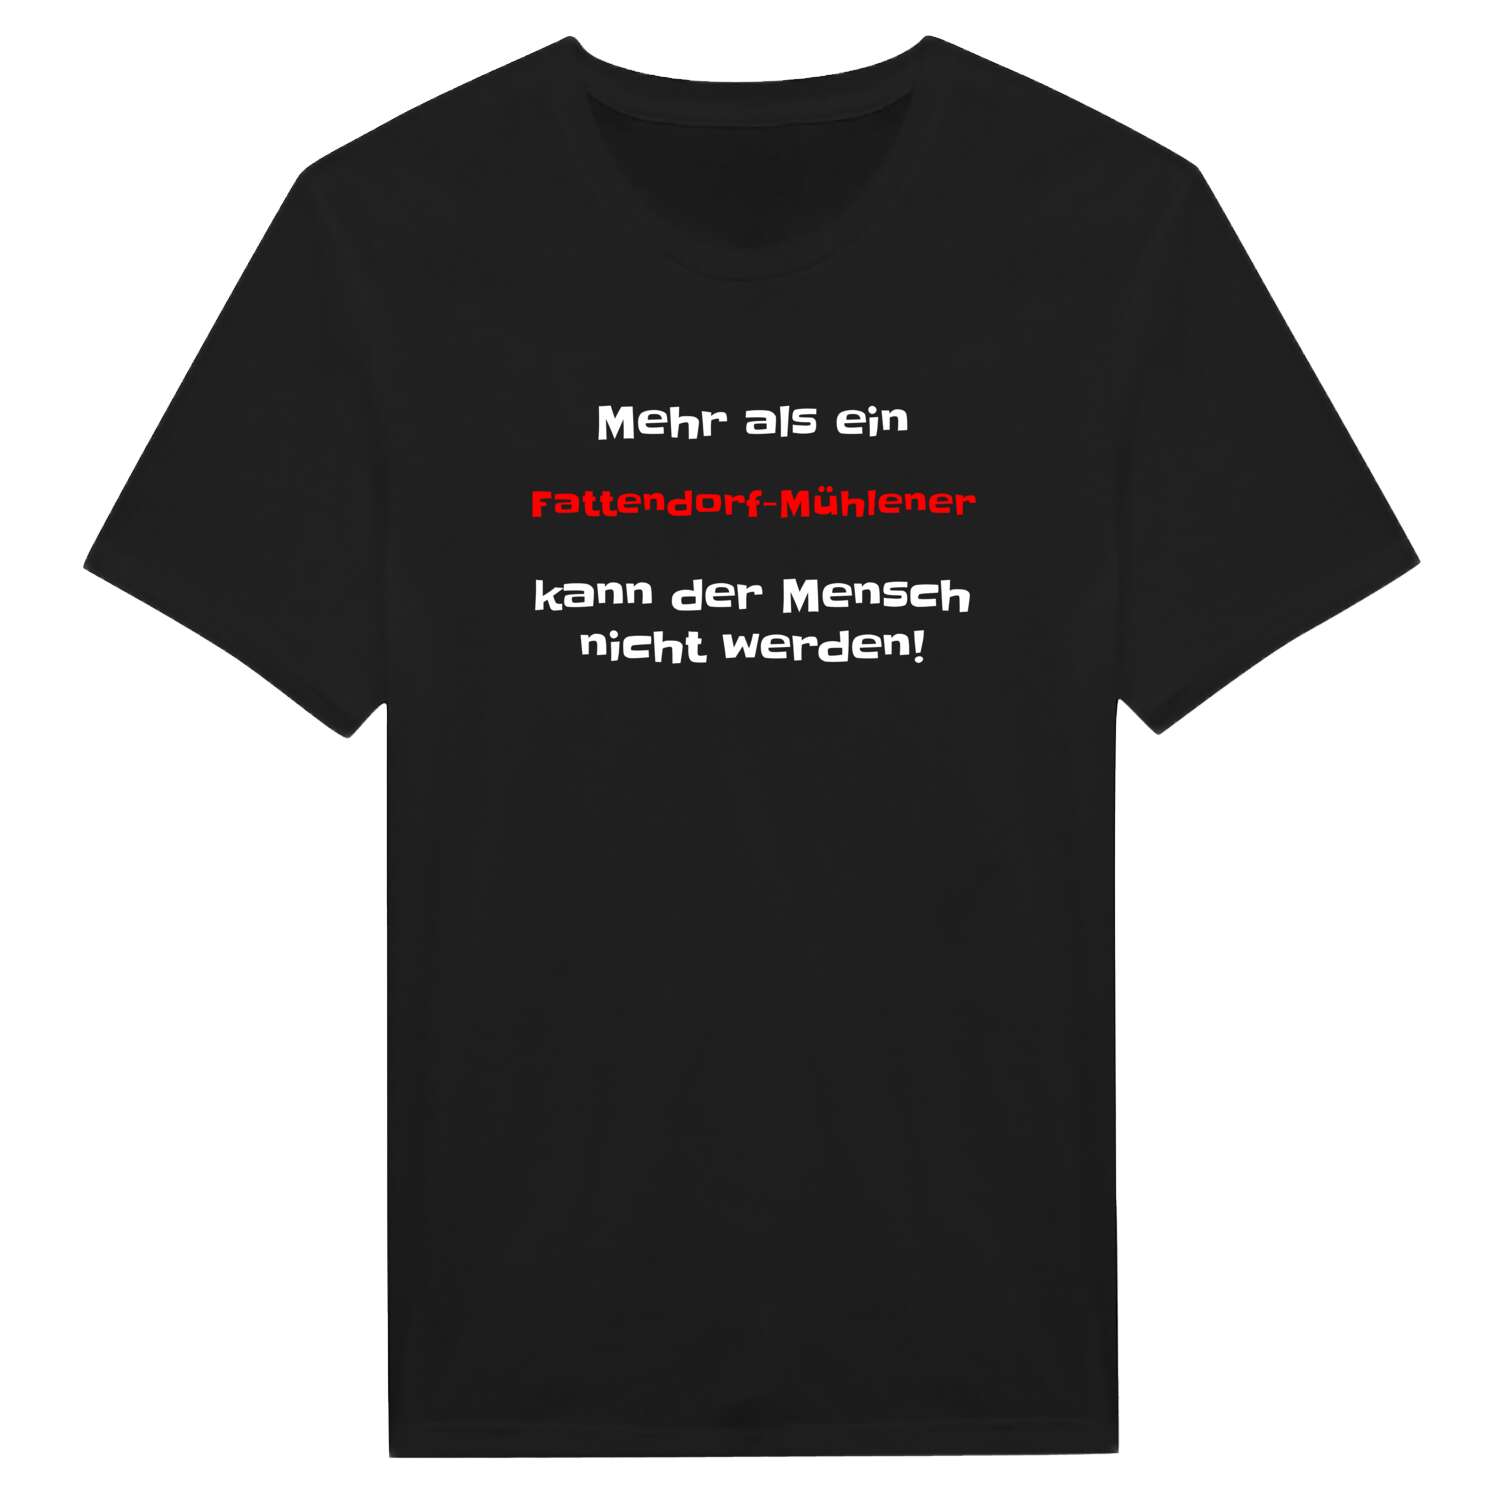 Fattendorf-Mühle T-Shirt »Mehr als ein«